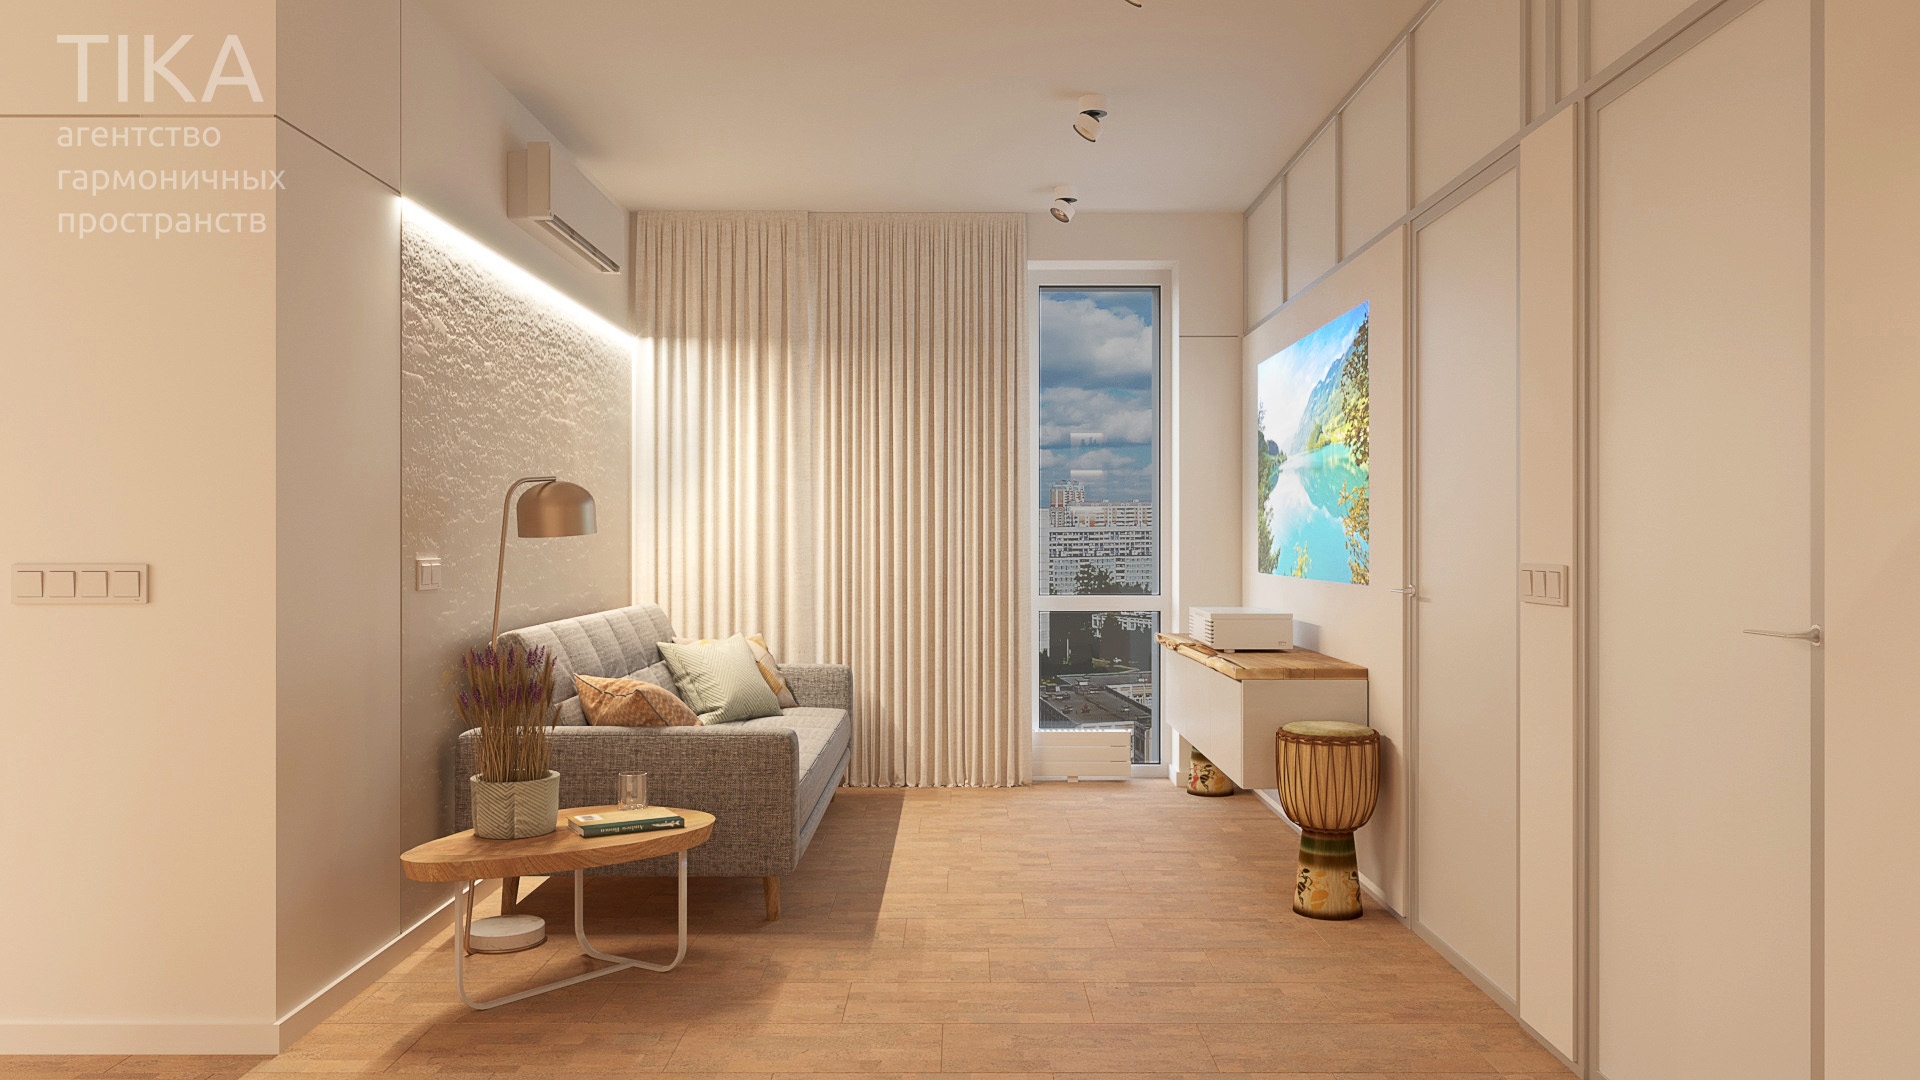 Изображение для проекта Дизайн интерьера квартиры в Москве 2134